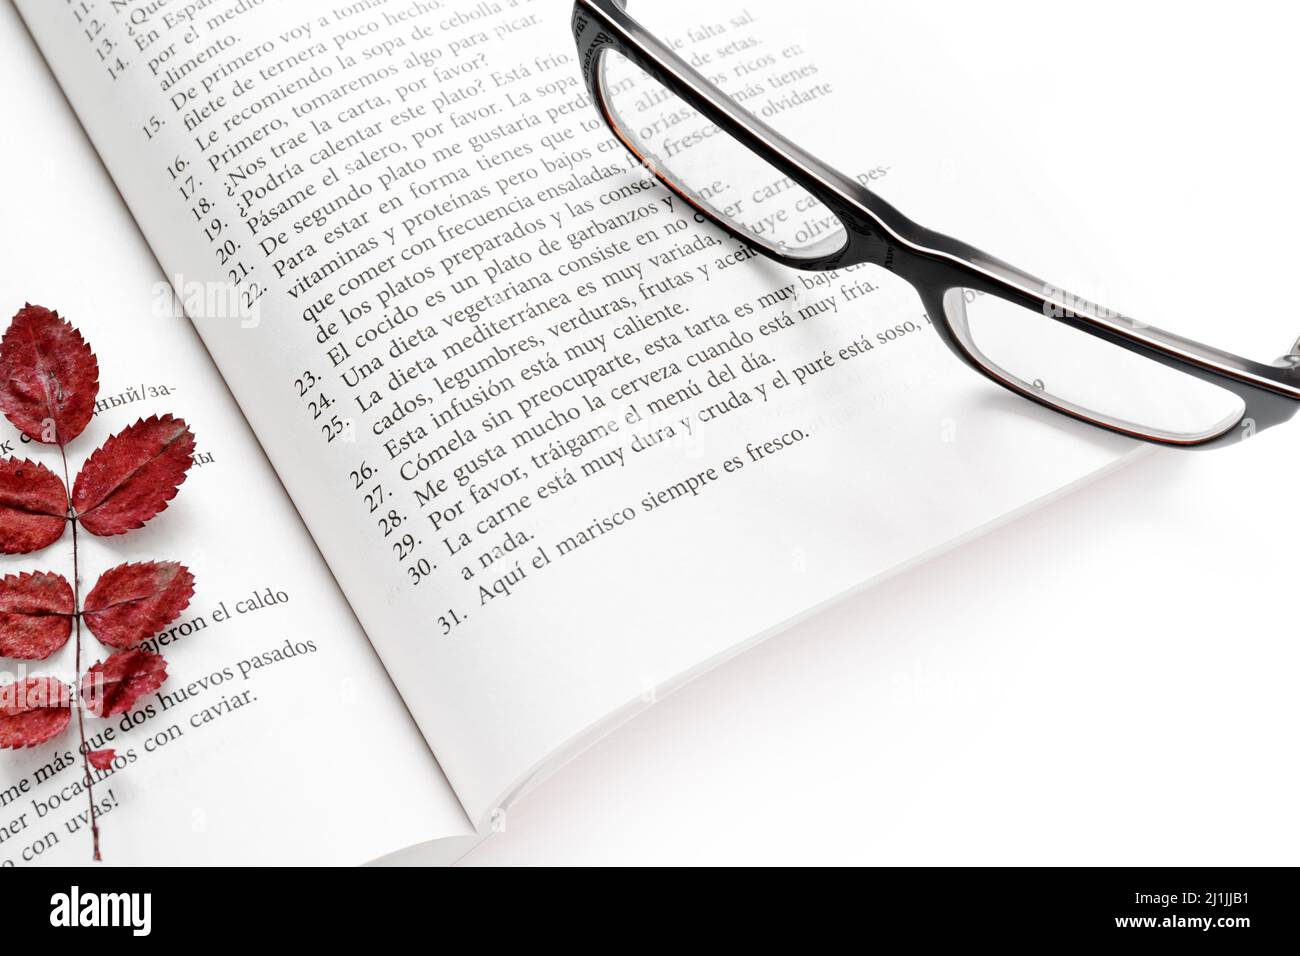 Mosca, Russia, 19 aprile 2019:un libro di testo in spagnolo aperto con un segnalibro di foglie rosse secche autunnali e occhiali neri sulla pagina Foto Stock